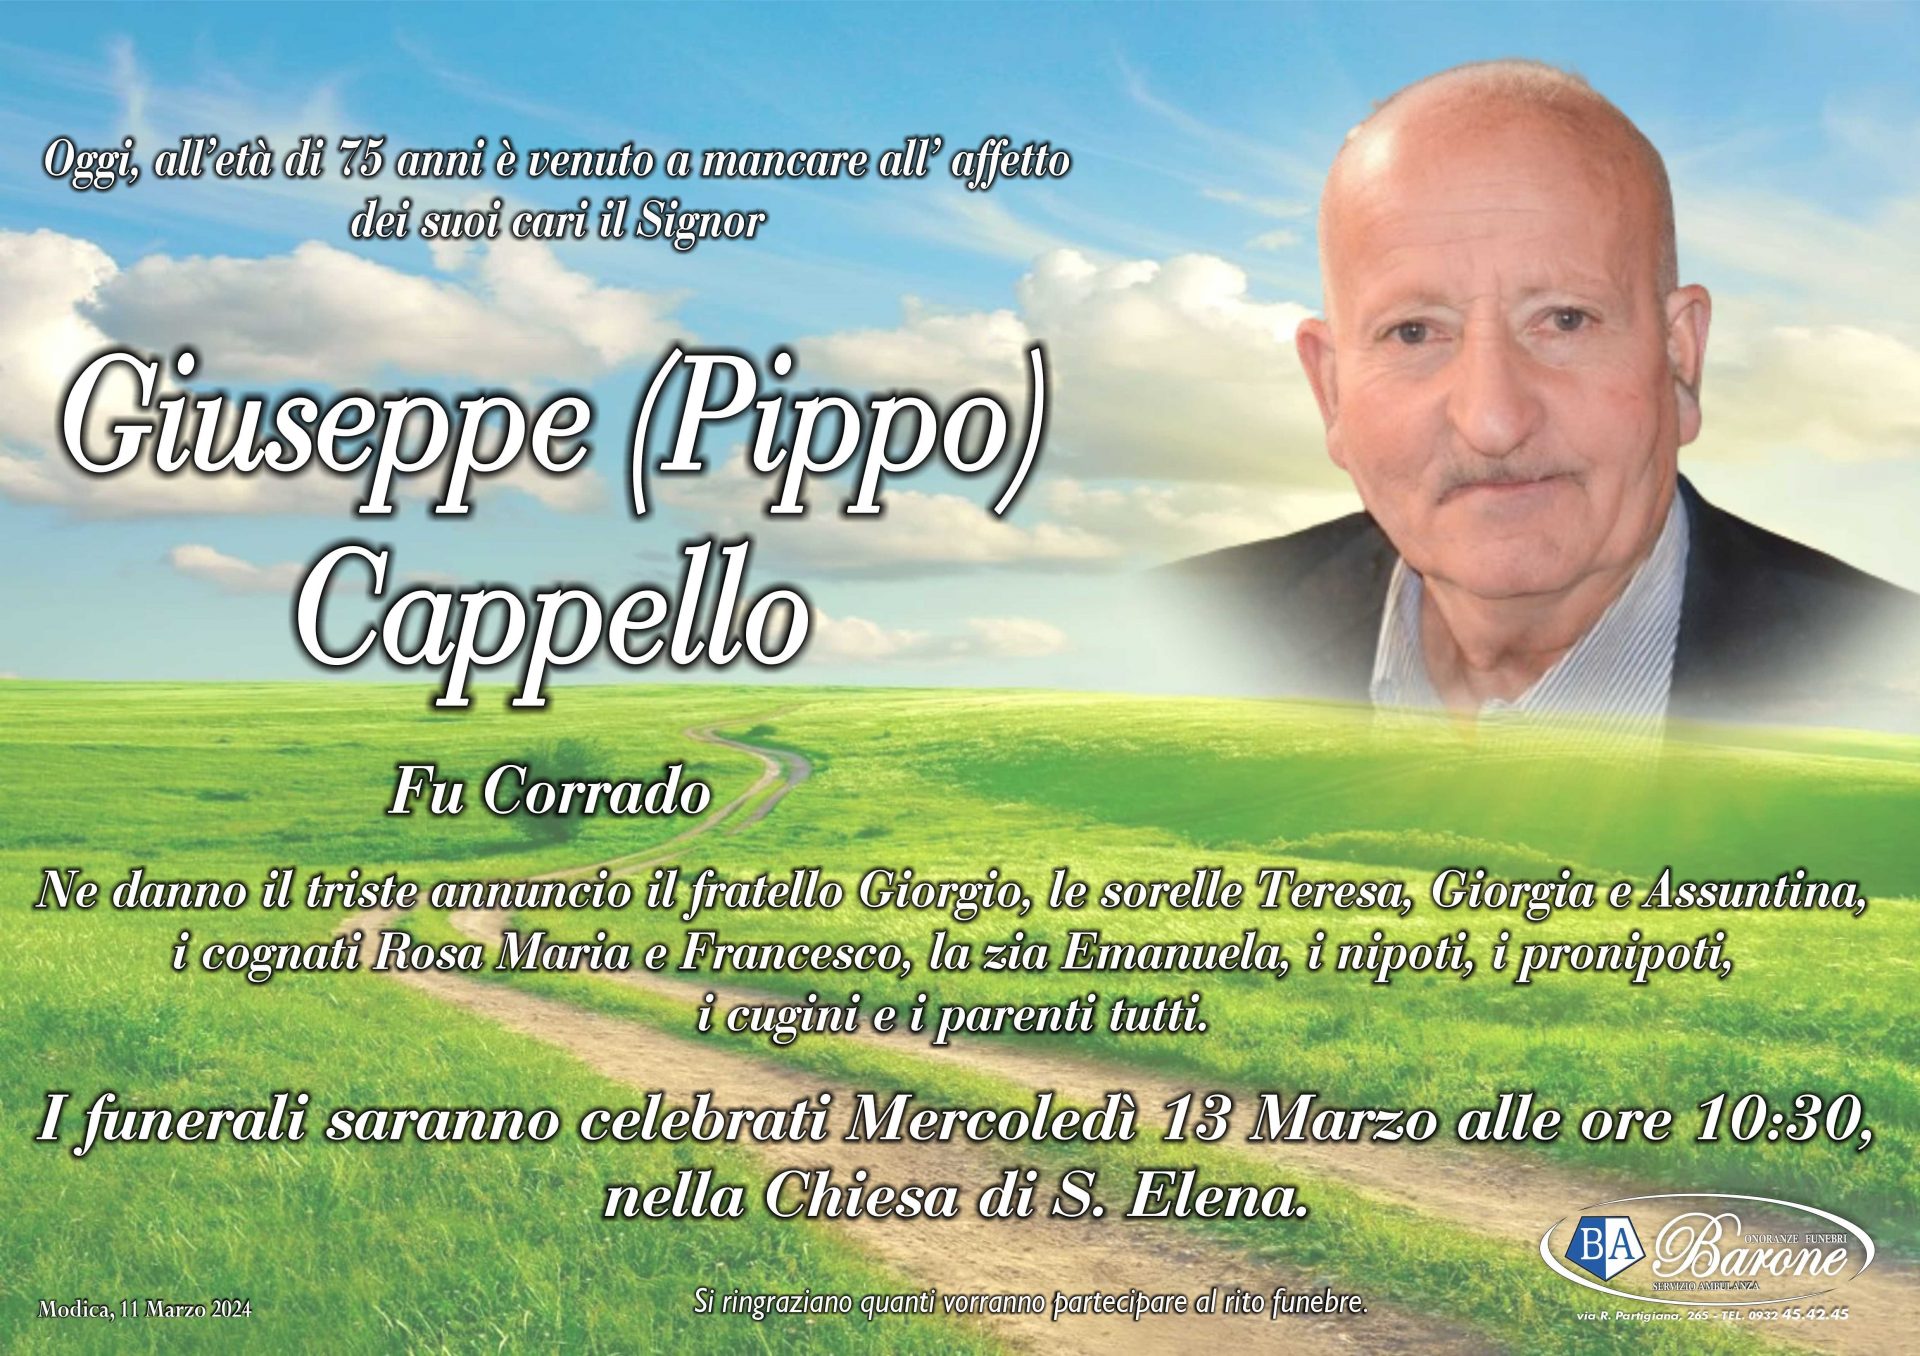 Giuseppe (Pippo) Cappello